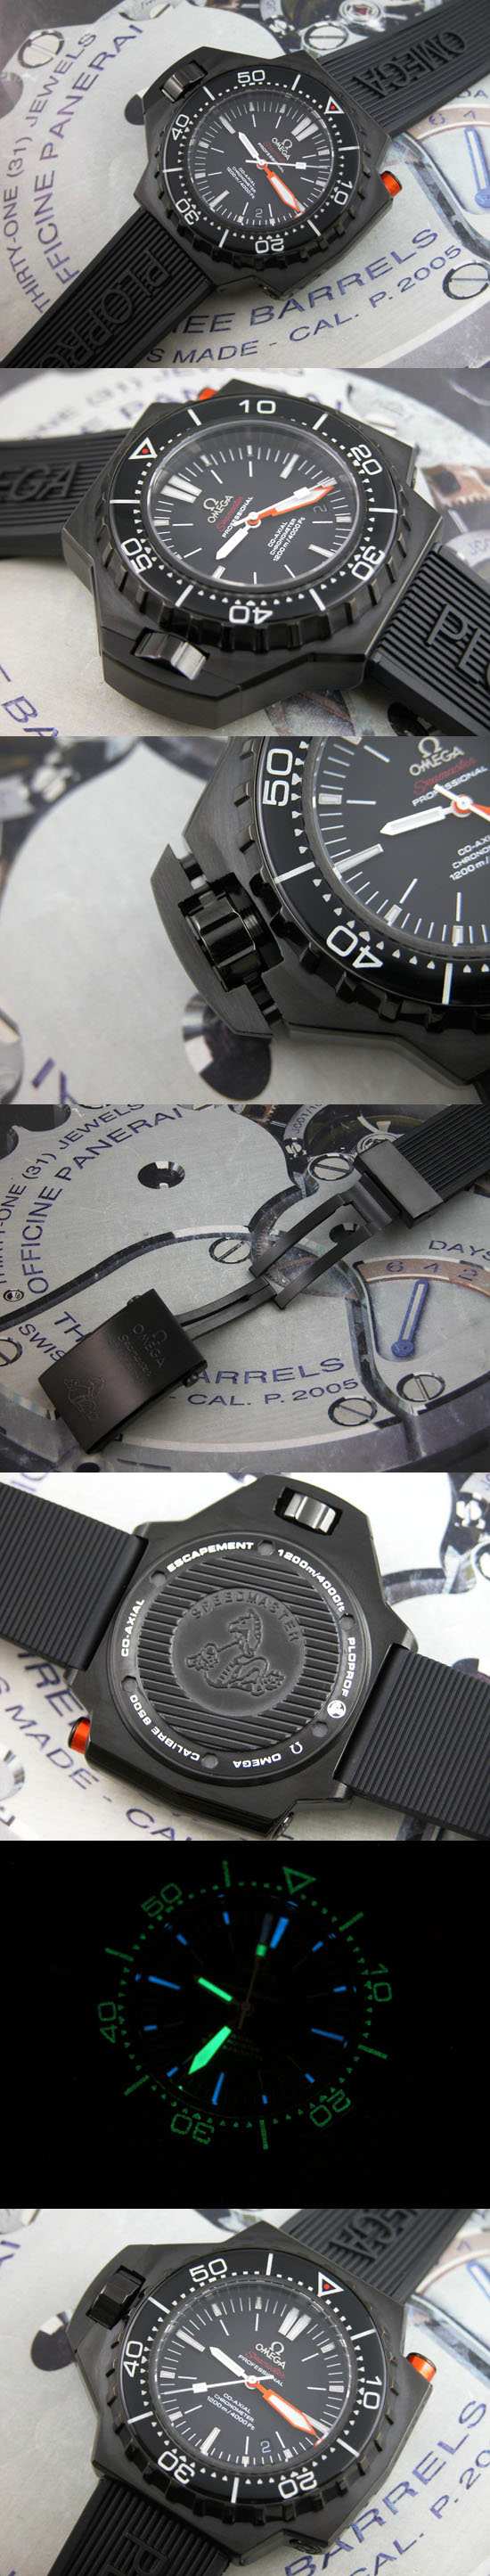 おしゃれなブランド時計がオメガ-シーマスター-OMEGA-224-32-55-21-01-001-bp-男性用を提供します.